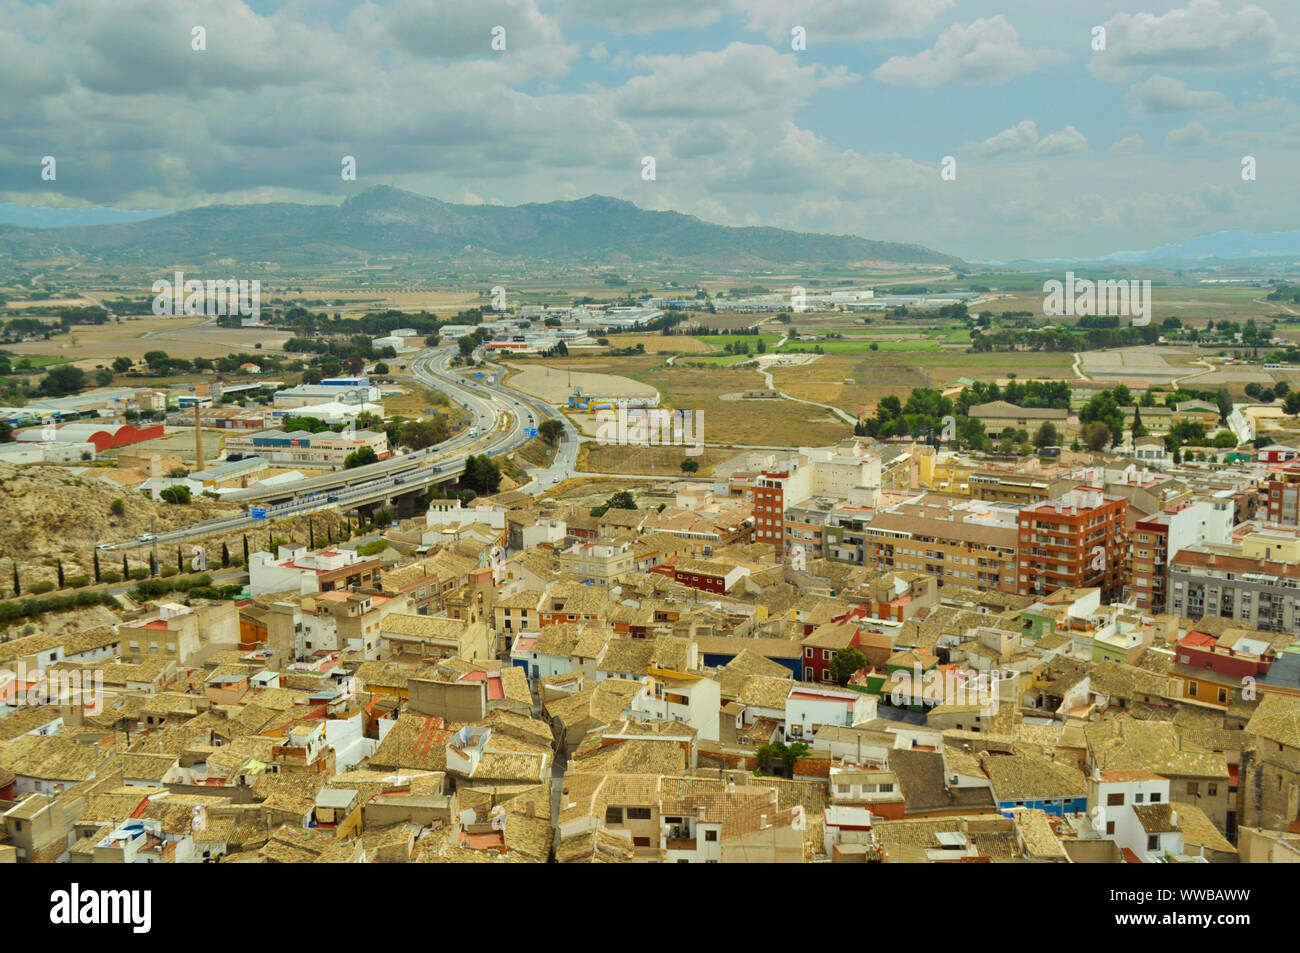 Sky Viewing einer alten Stadt - Landschaft Panoramabild von einem Berg Stockfoto